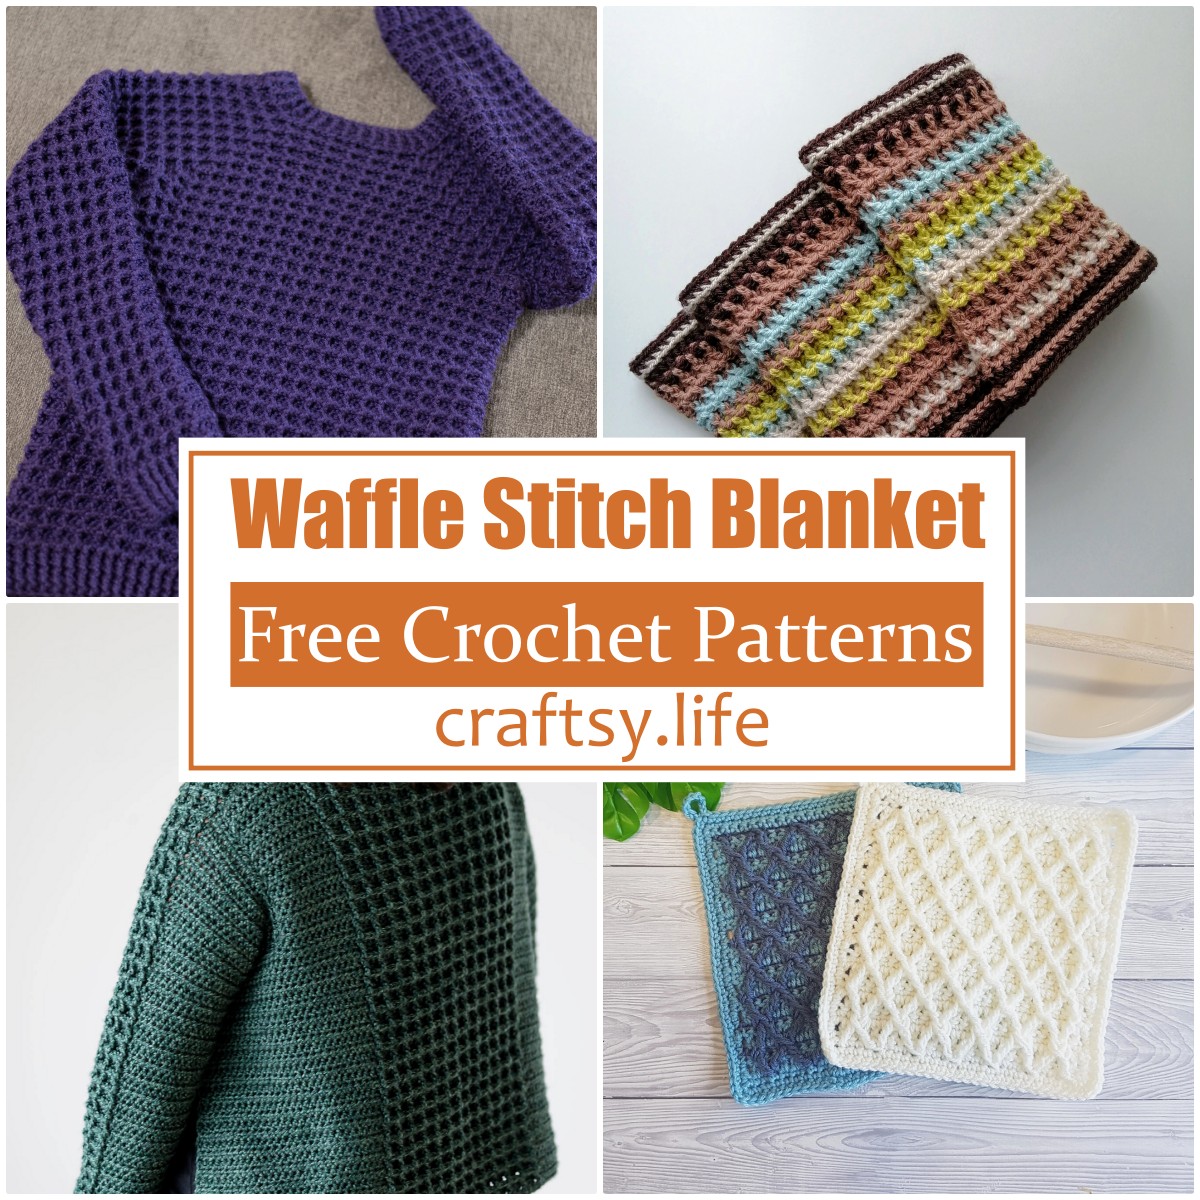 Crochet Waffle Stitch Blanket Free Patterns